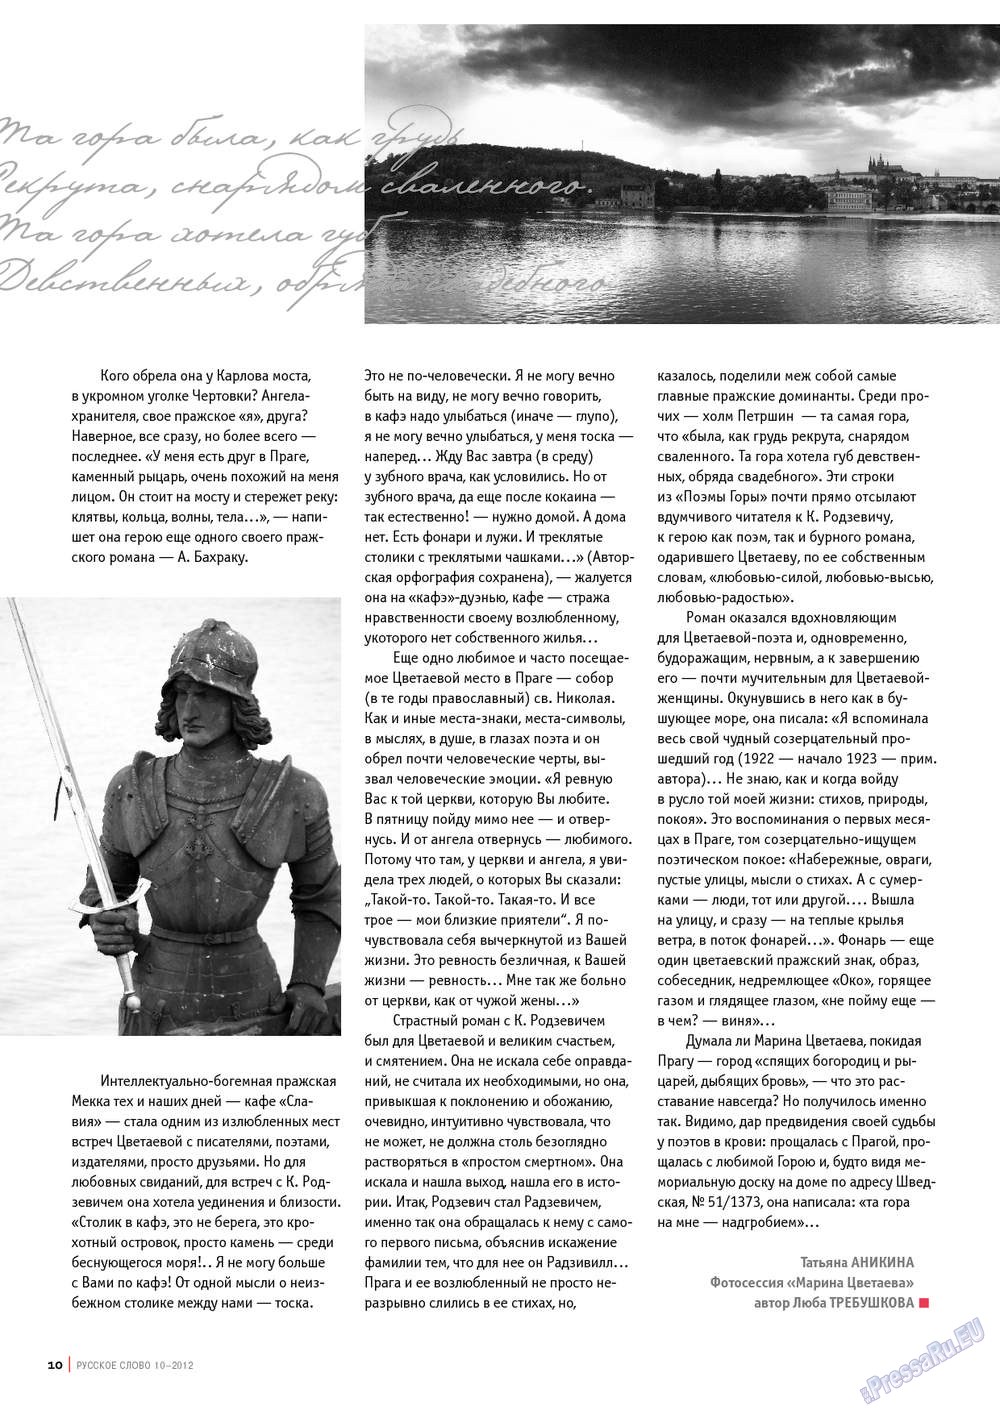 Русское слово, журнал. 2012 №10 стр.12